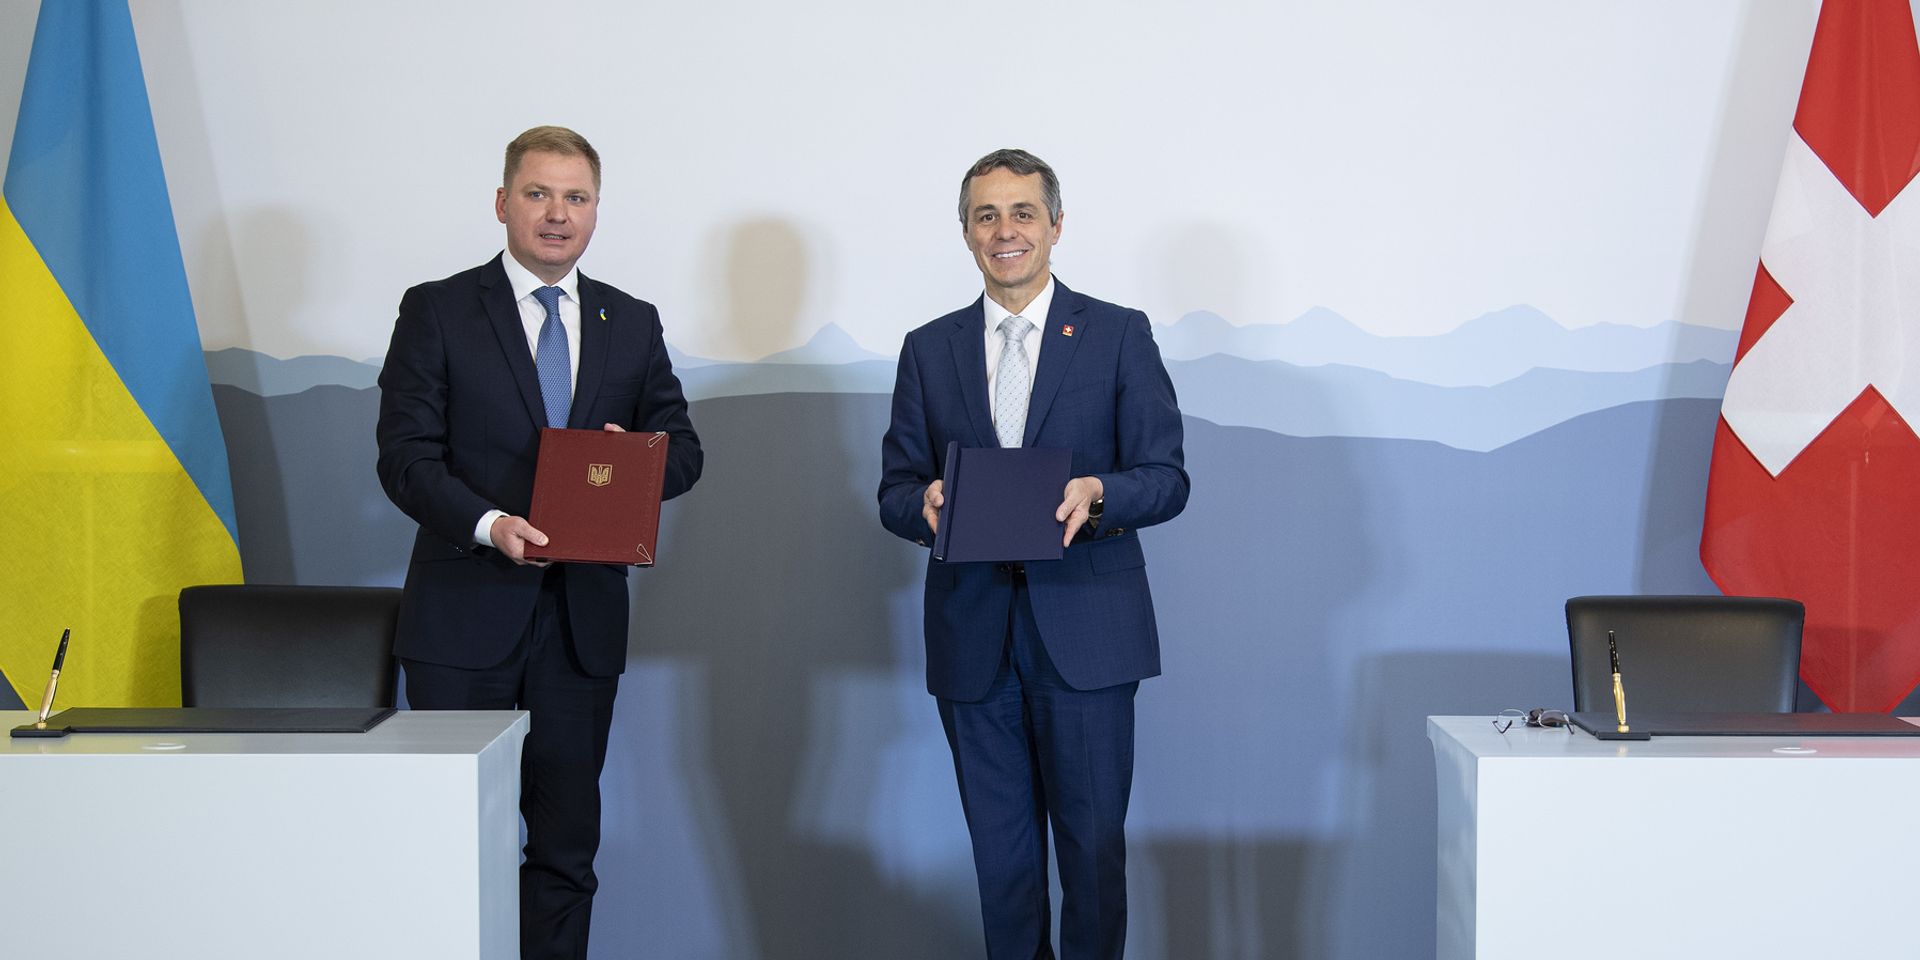 Der ukrainische Botschafter in der Schweiz, Artem Rybchenko, und Bundesrat Ignazio Cassis bei der Unterzeichnung des Memorandum of Understanding am 30. Juni 2020 in Bern.